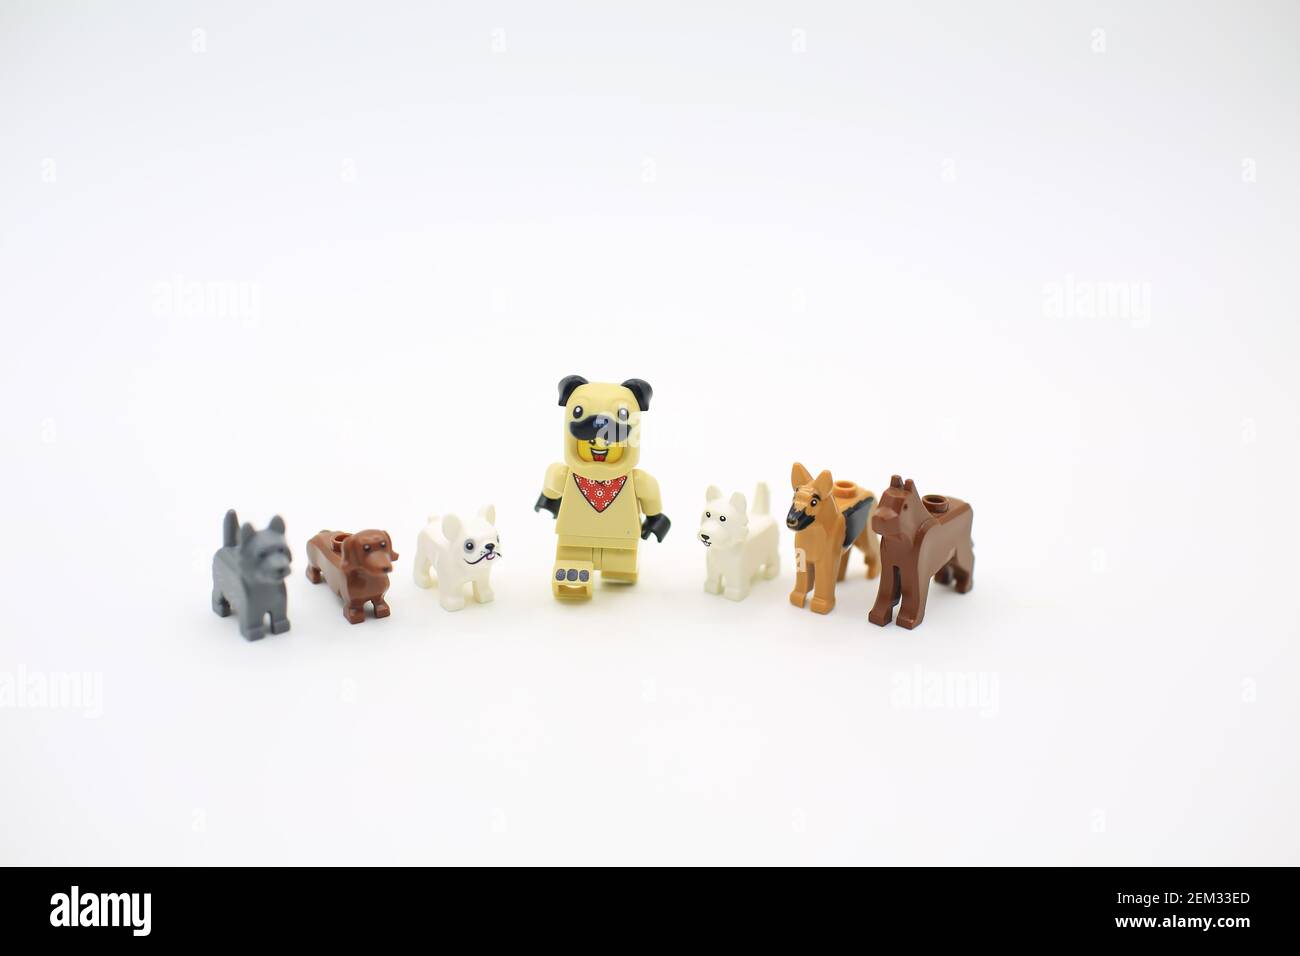 lego dog leader Stock Photo - Alamy